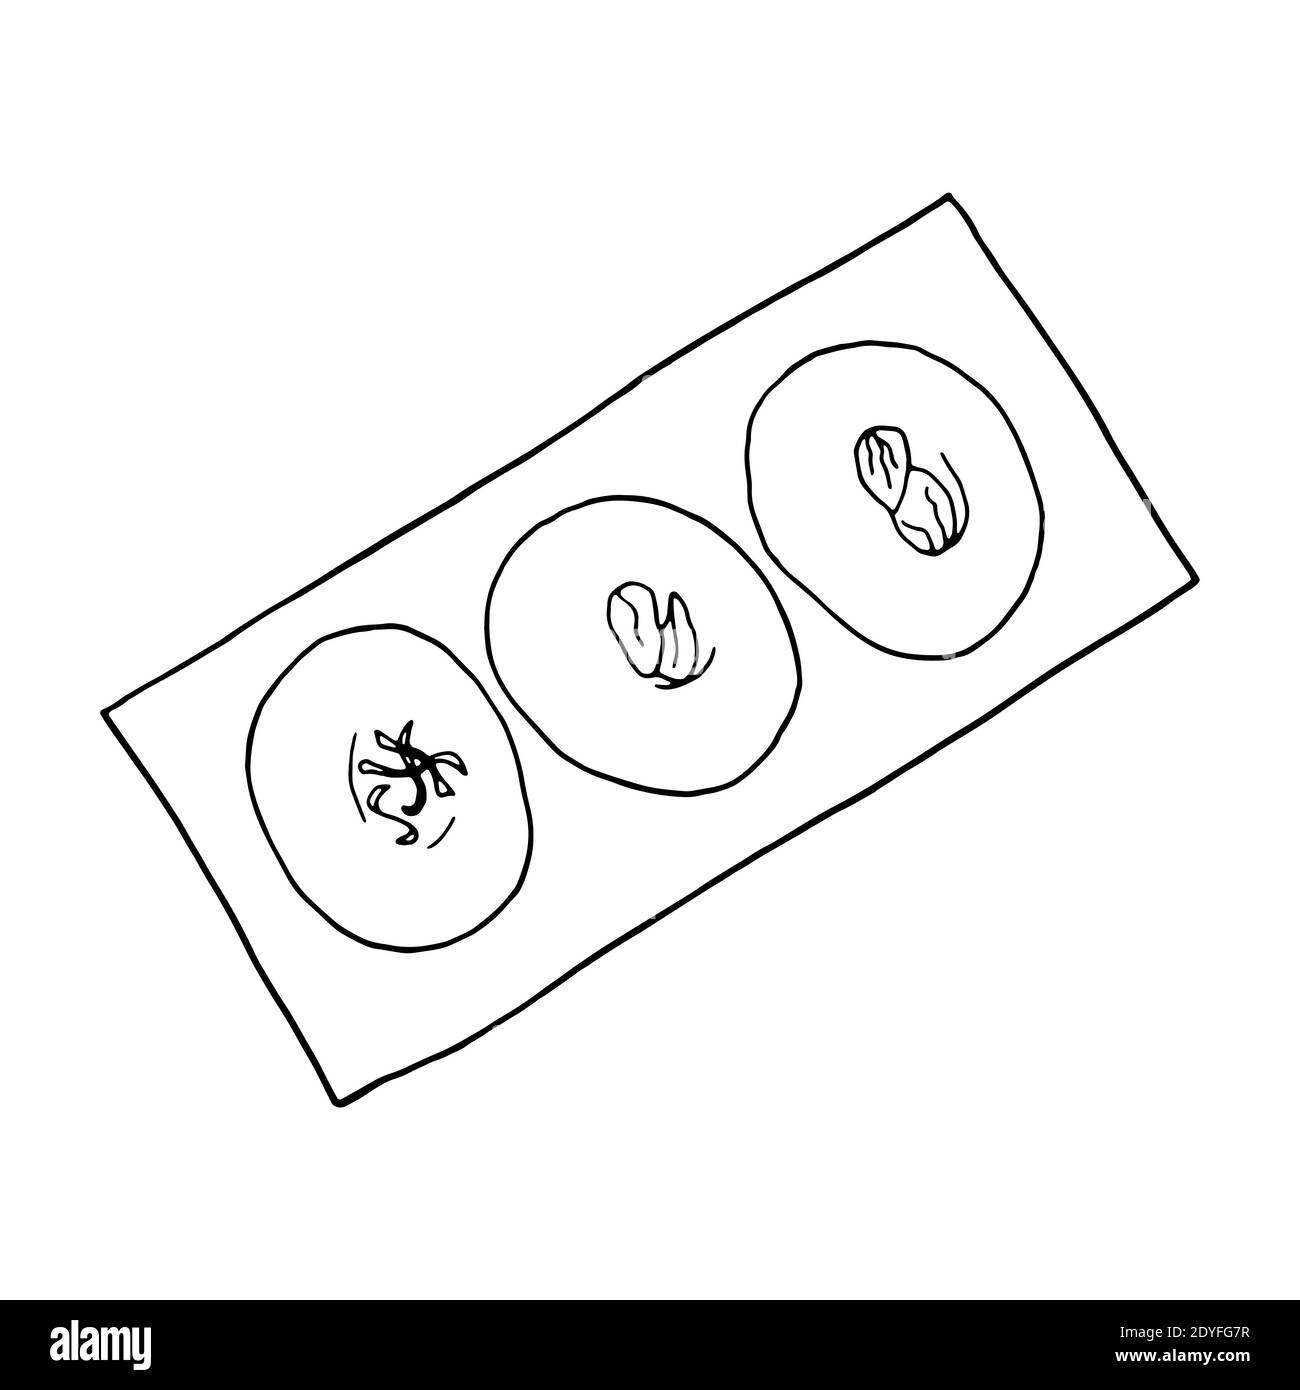 Vector hand drawn doodle sandesh. Indian dessert. Design sketch element for menu cafe, restaurant, label and packaging. Illustration on a white backgr Stock Vector